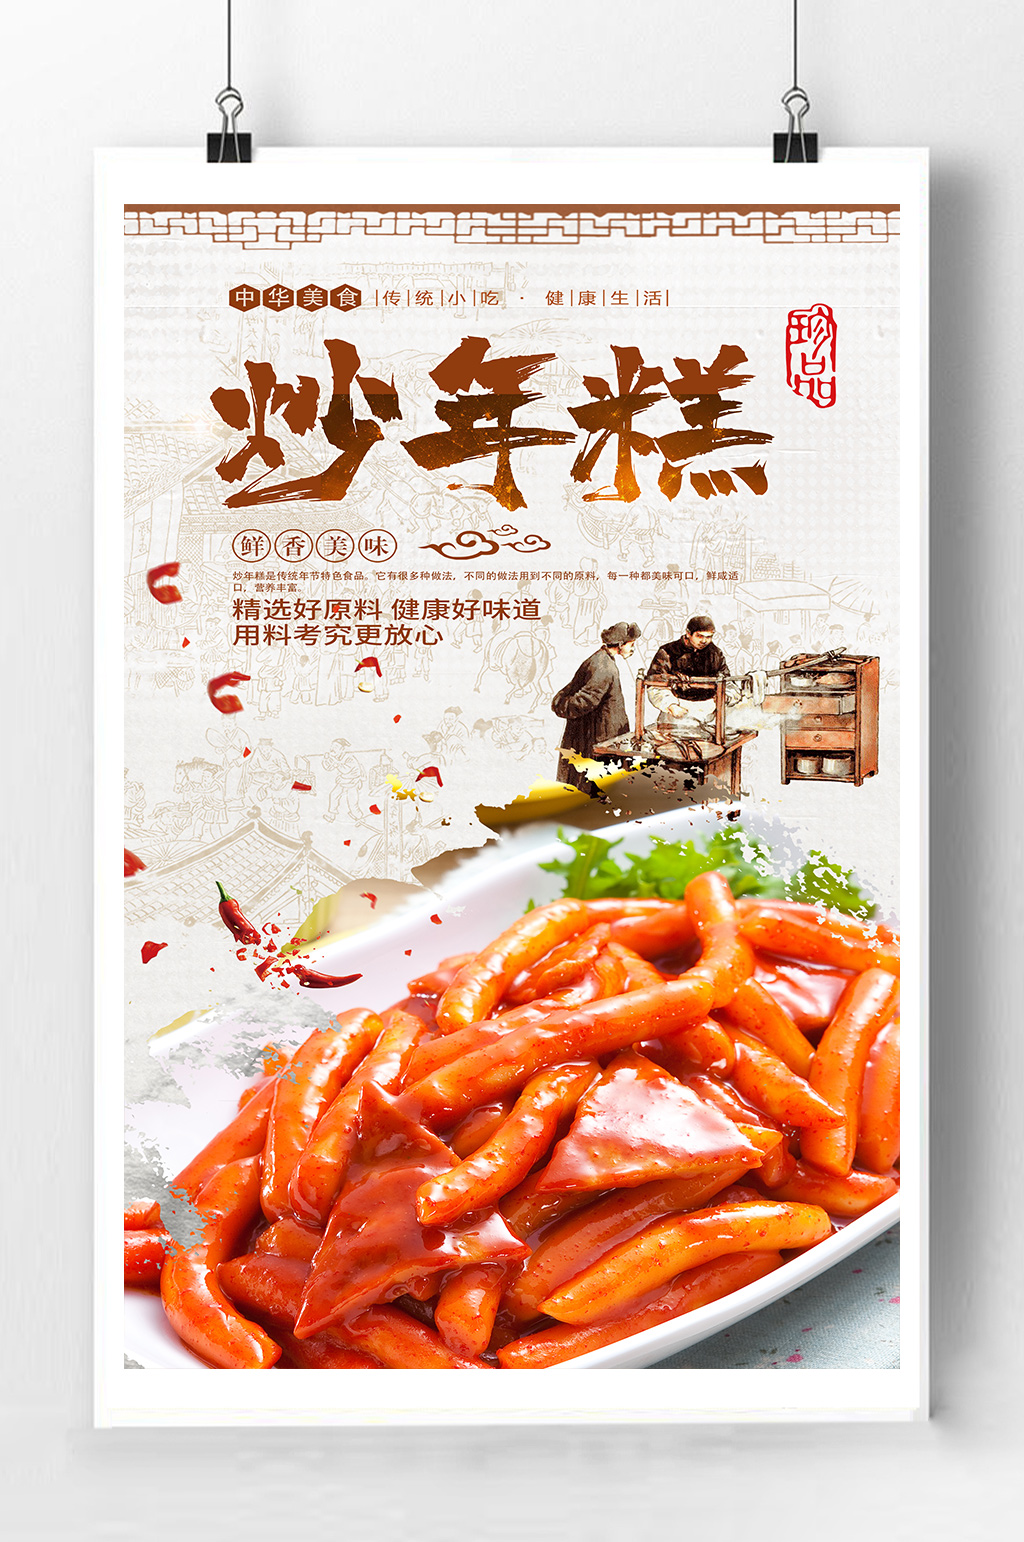 韩式炒年糕料理美食宣传海报立即下载炒年糕韩国料理海报立即下载日料